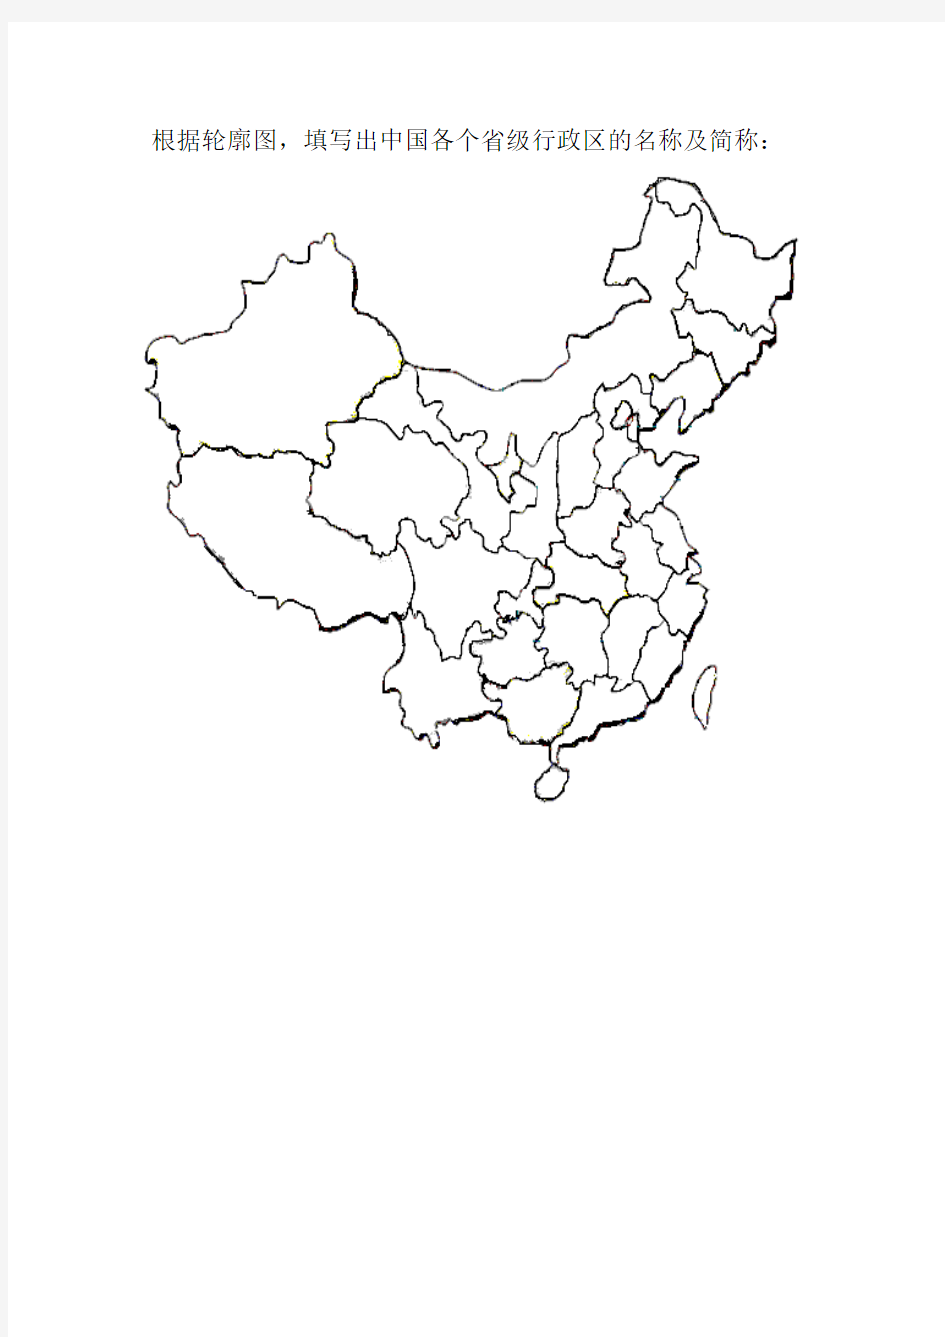 填写中国各个省级行政区的名称及简称